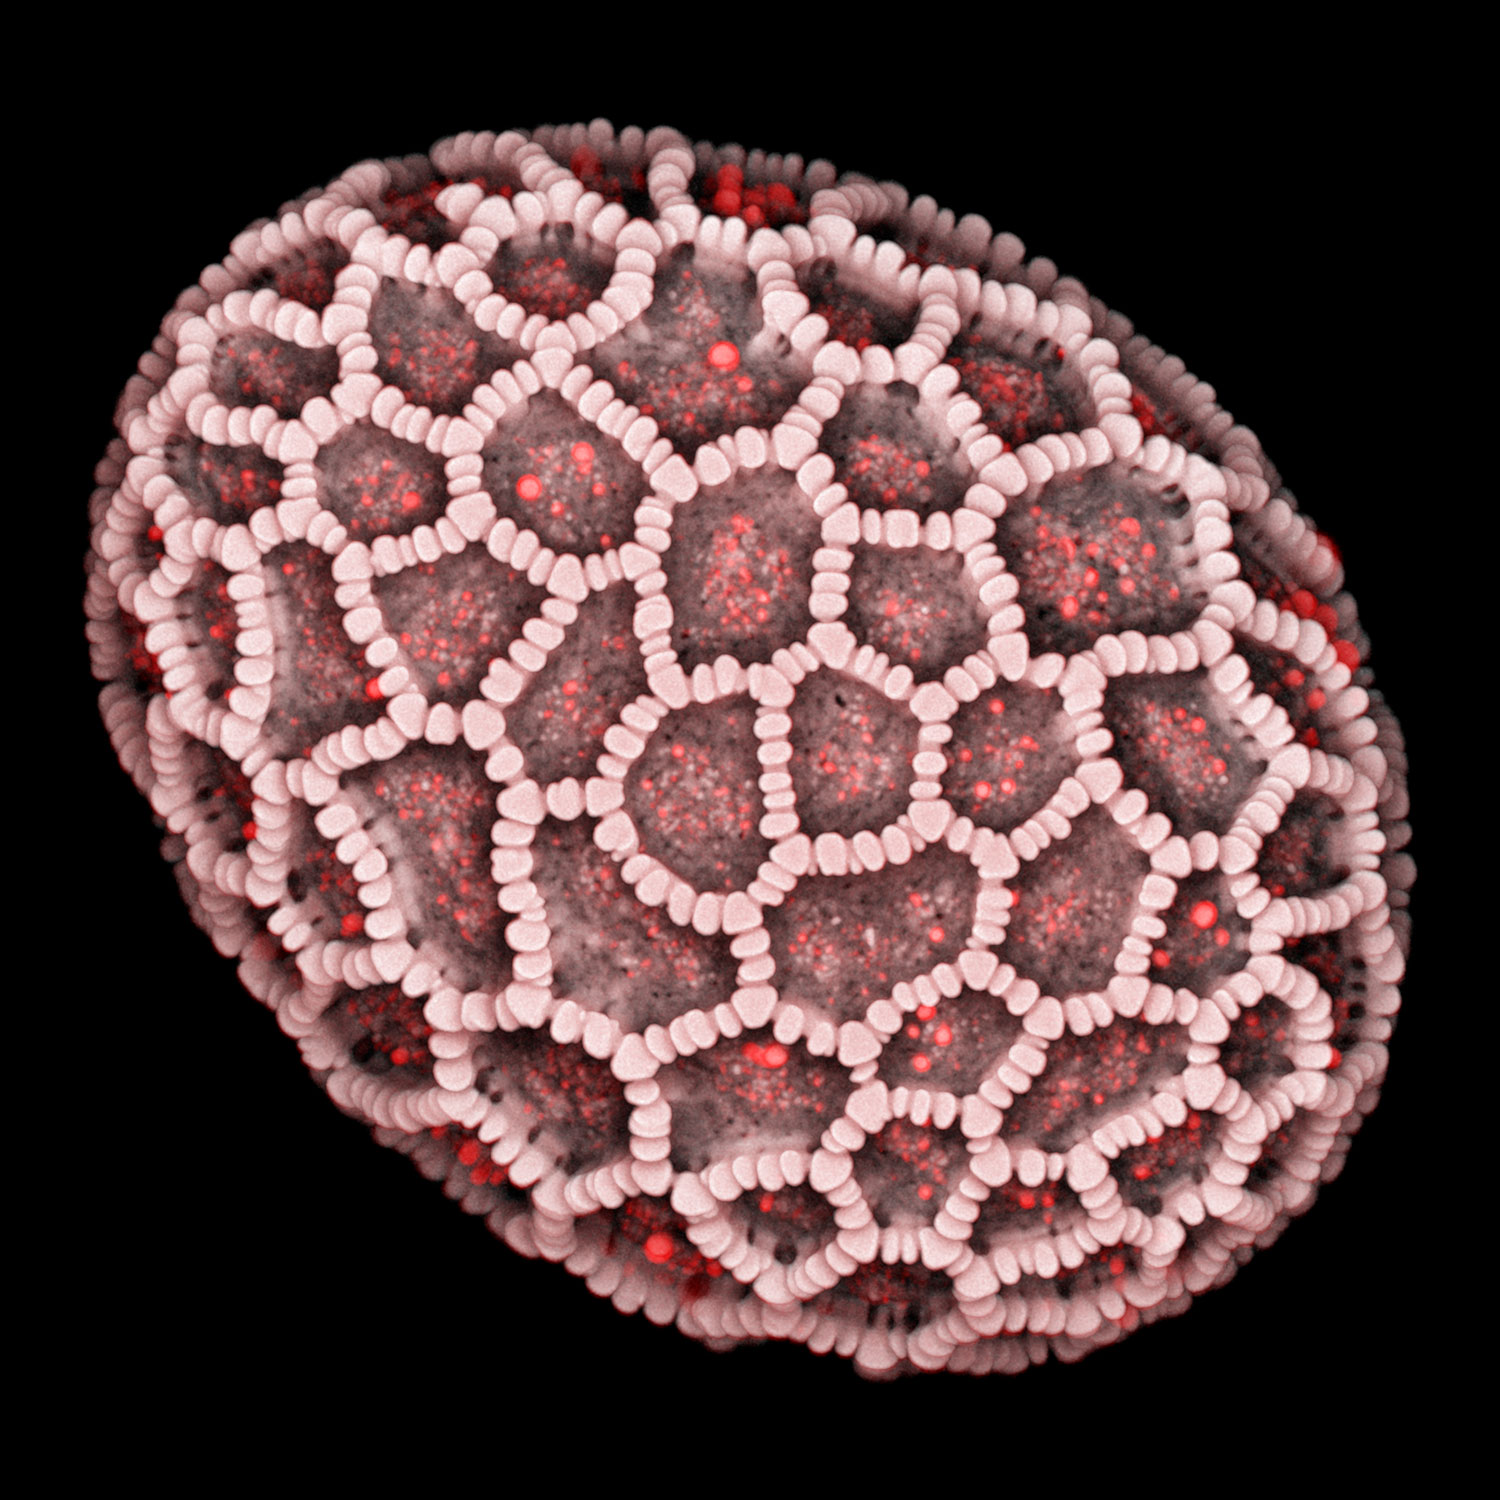 显微照片显示了利用Airyscan 2在Multiplex模式下采集的天香百合花粉粒。 图像由基尔大学动物研究所的Jan Michels提供